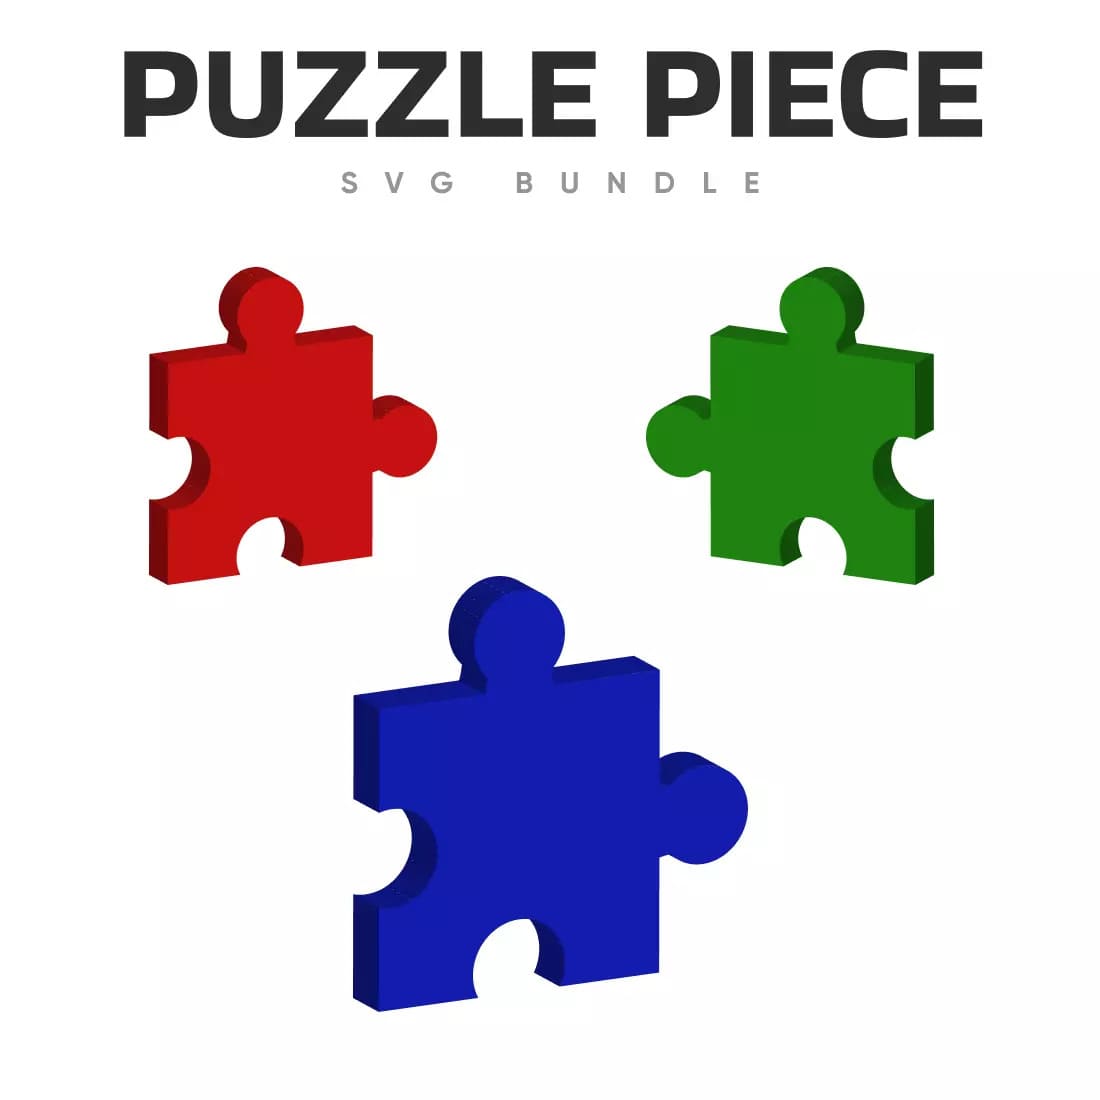 Puzzle Piece SVG Bundle Preview.